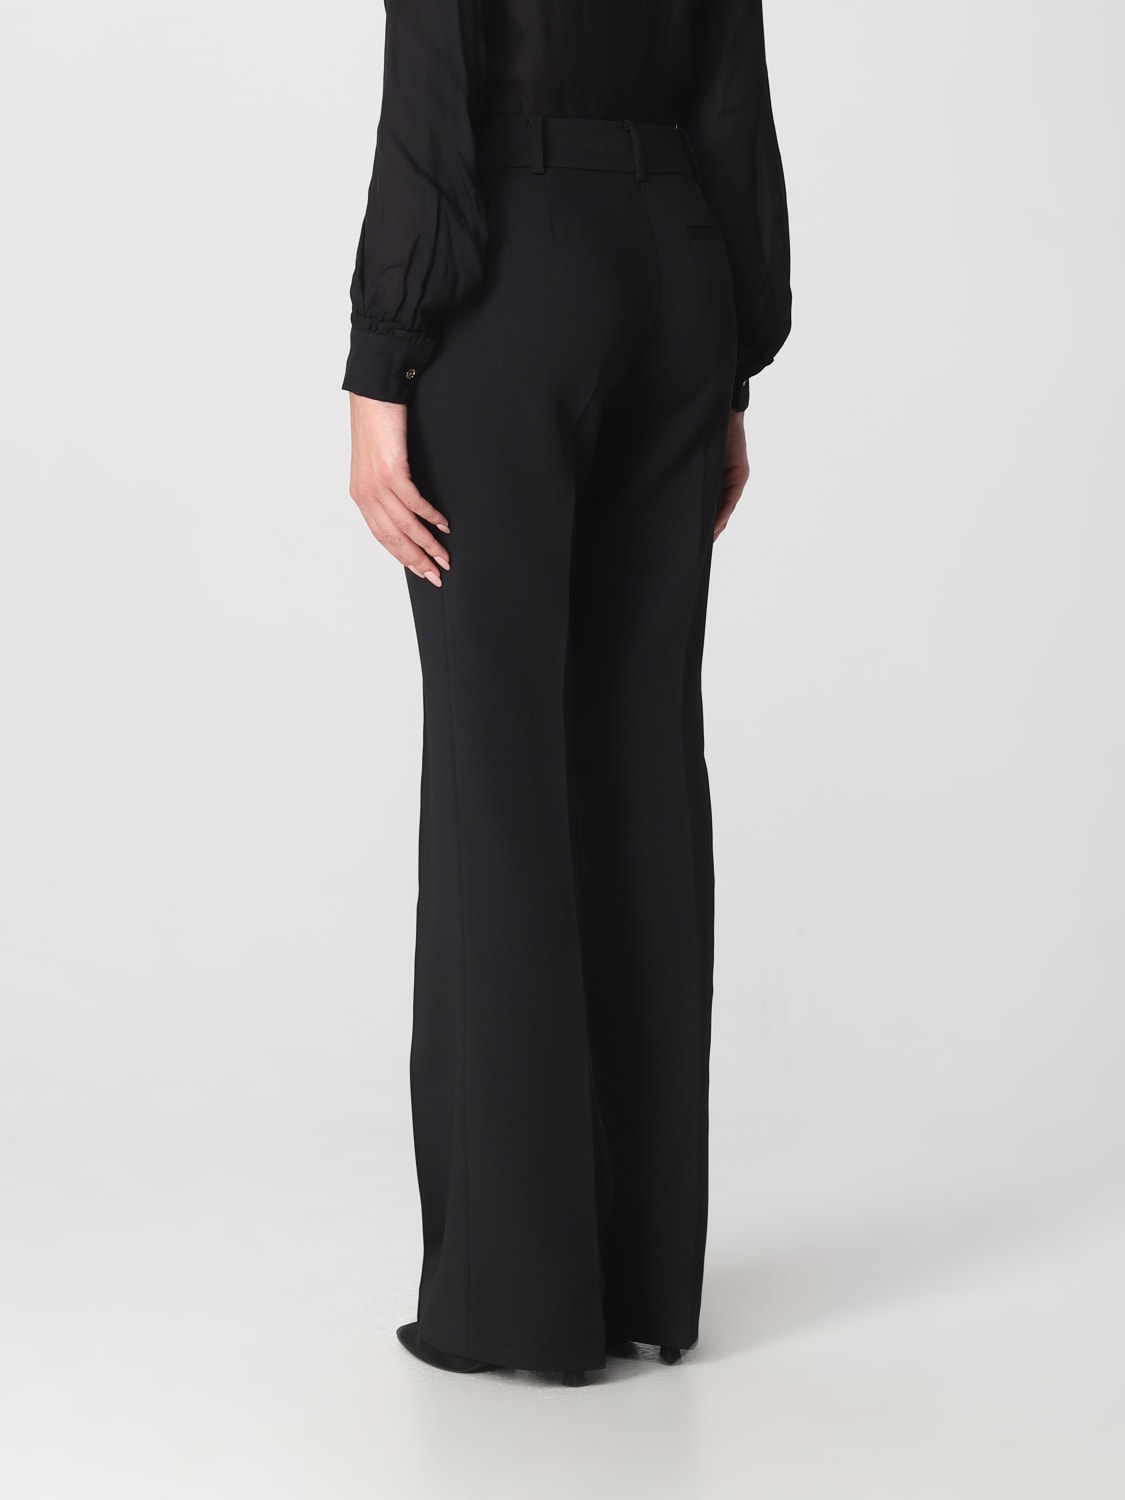 MICHAEL KORS: trousers for women - Black